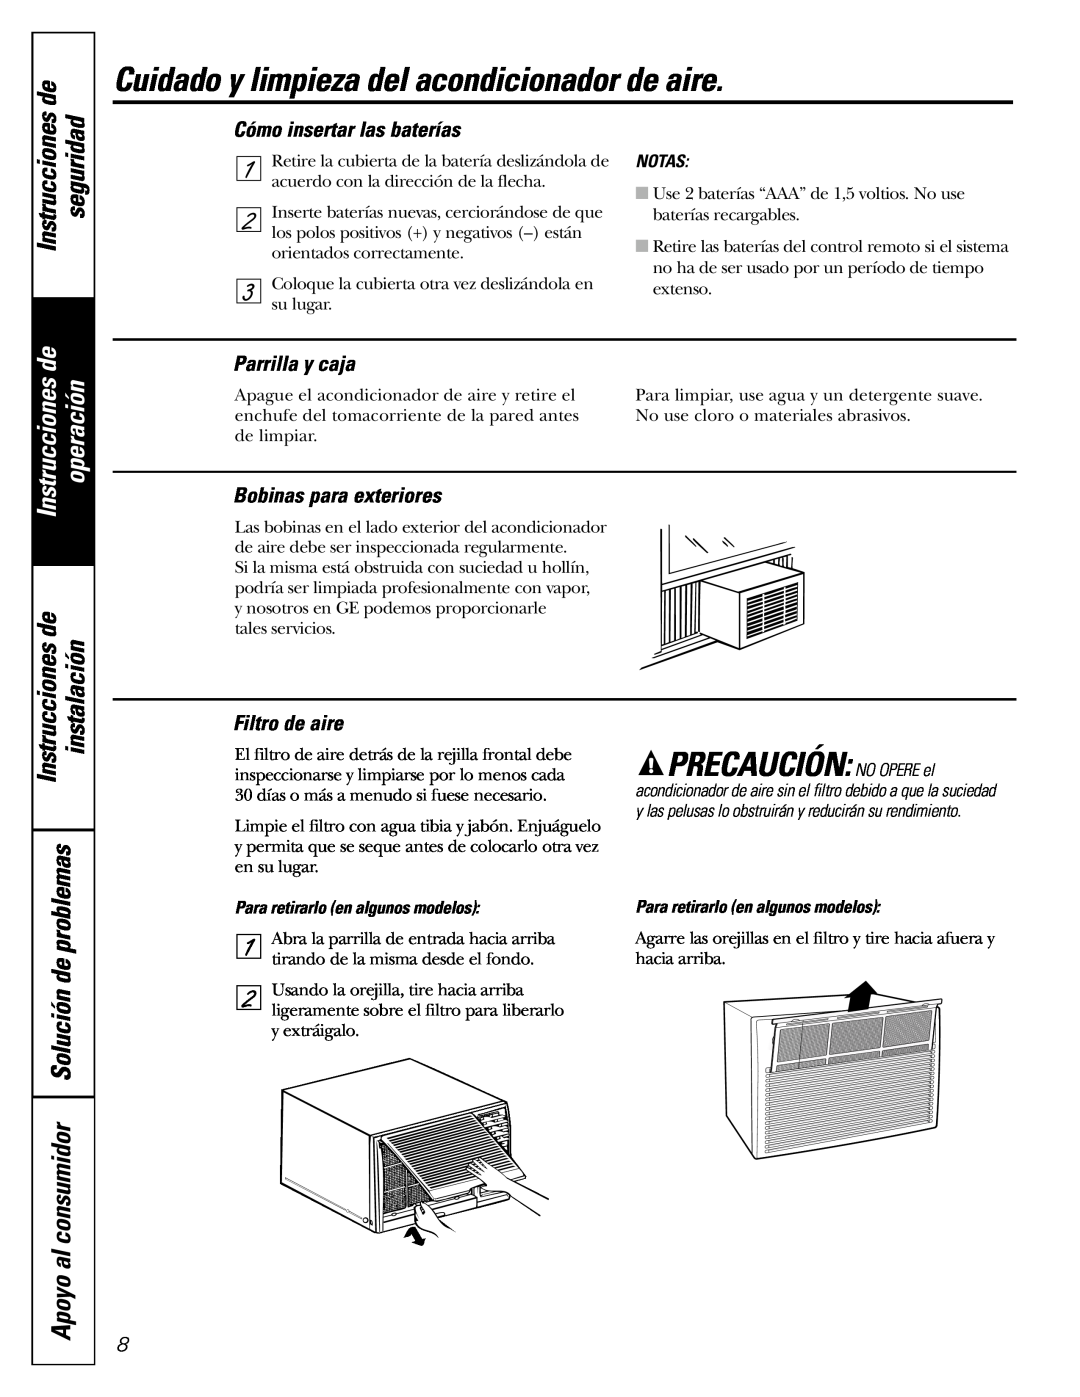 GE ASM24 Cuidado y limpieza del acondicionador de aire, Apoyo al consumidor Solución de, Cómo insertar las baterías, Notas 